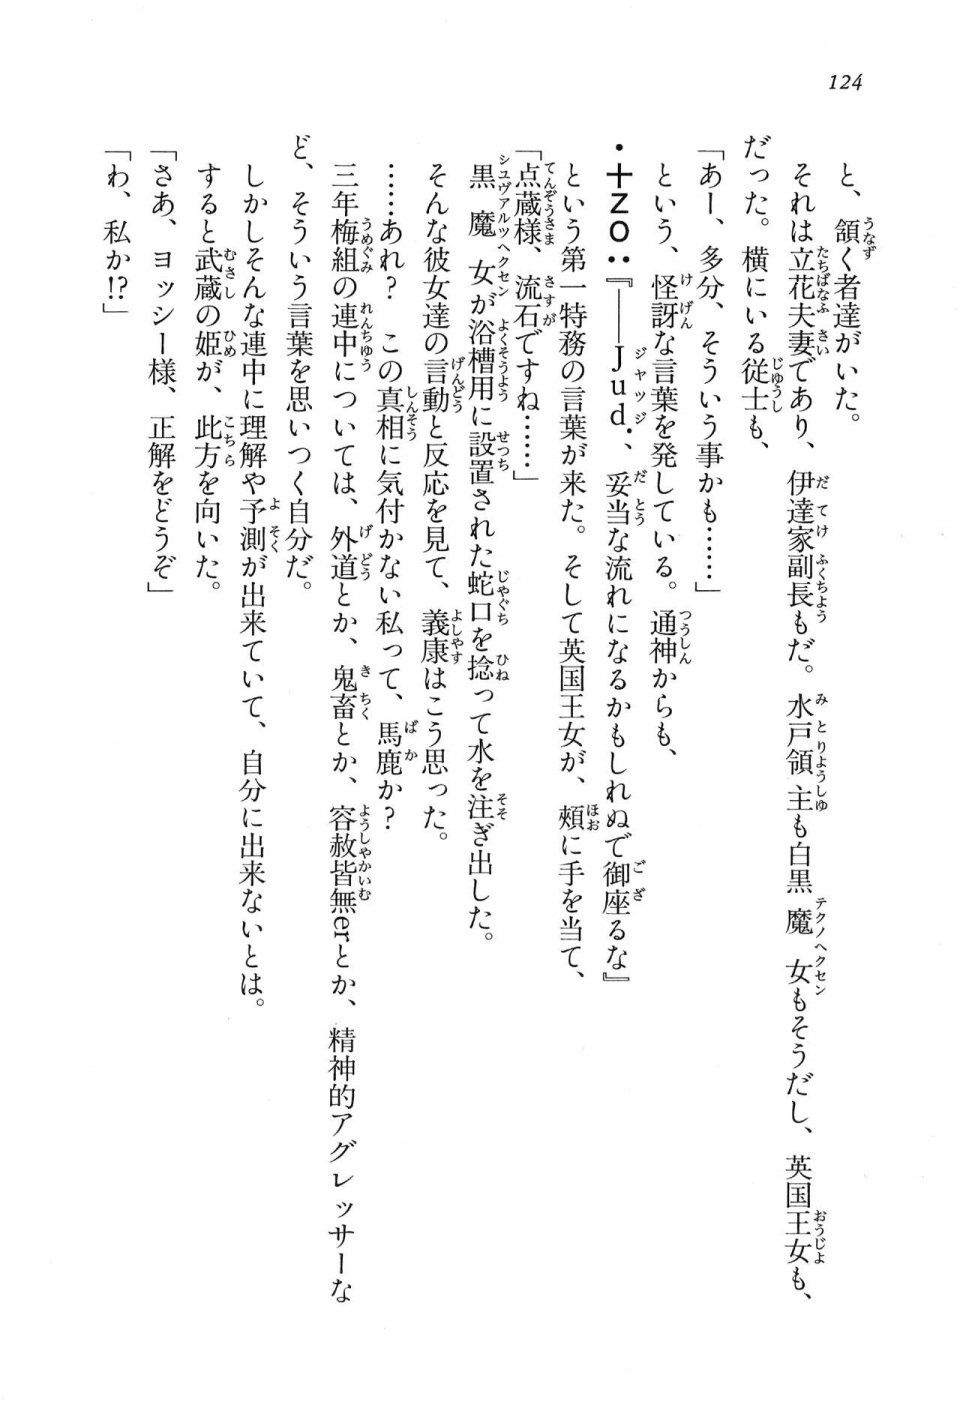 Kyoukai Senjou no Horizon LN Vol 16(7A) - Photo #124